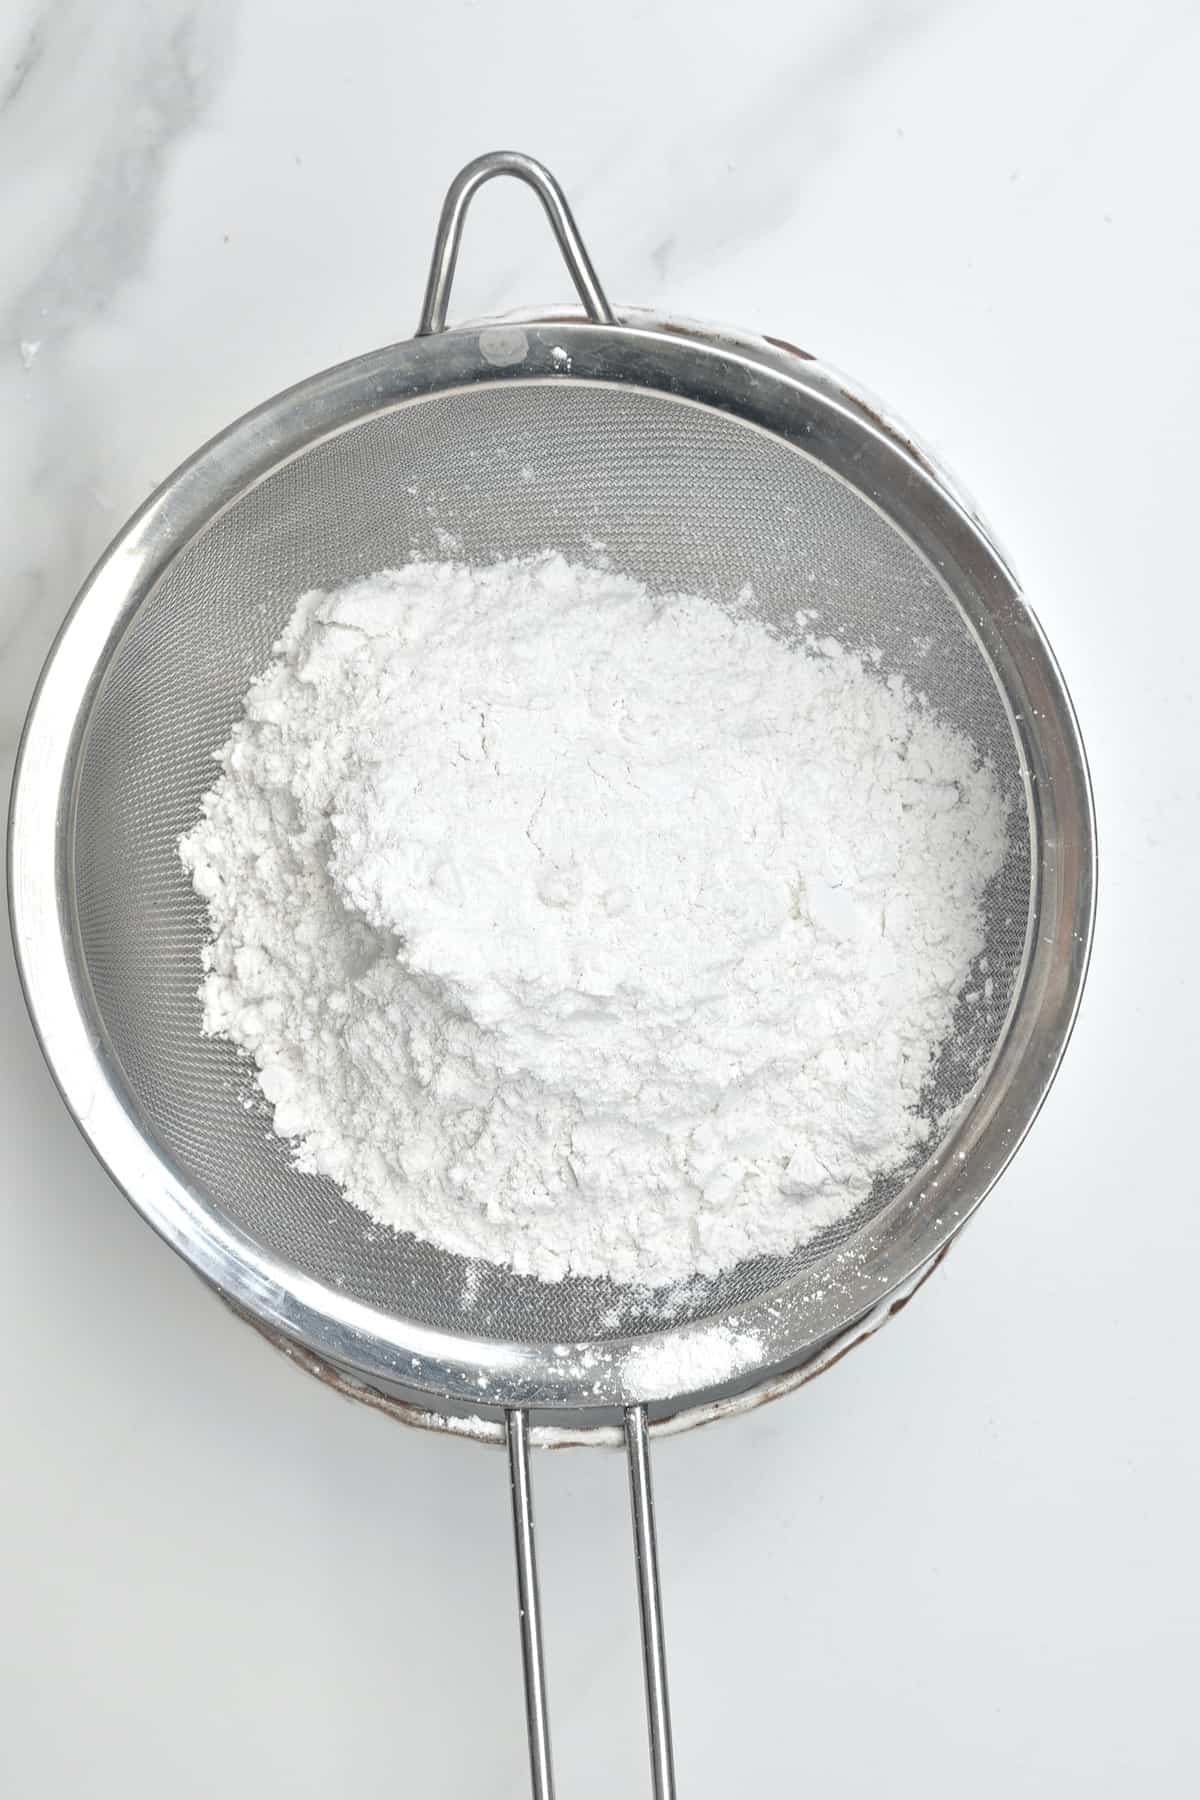 Sieving flour starch